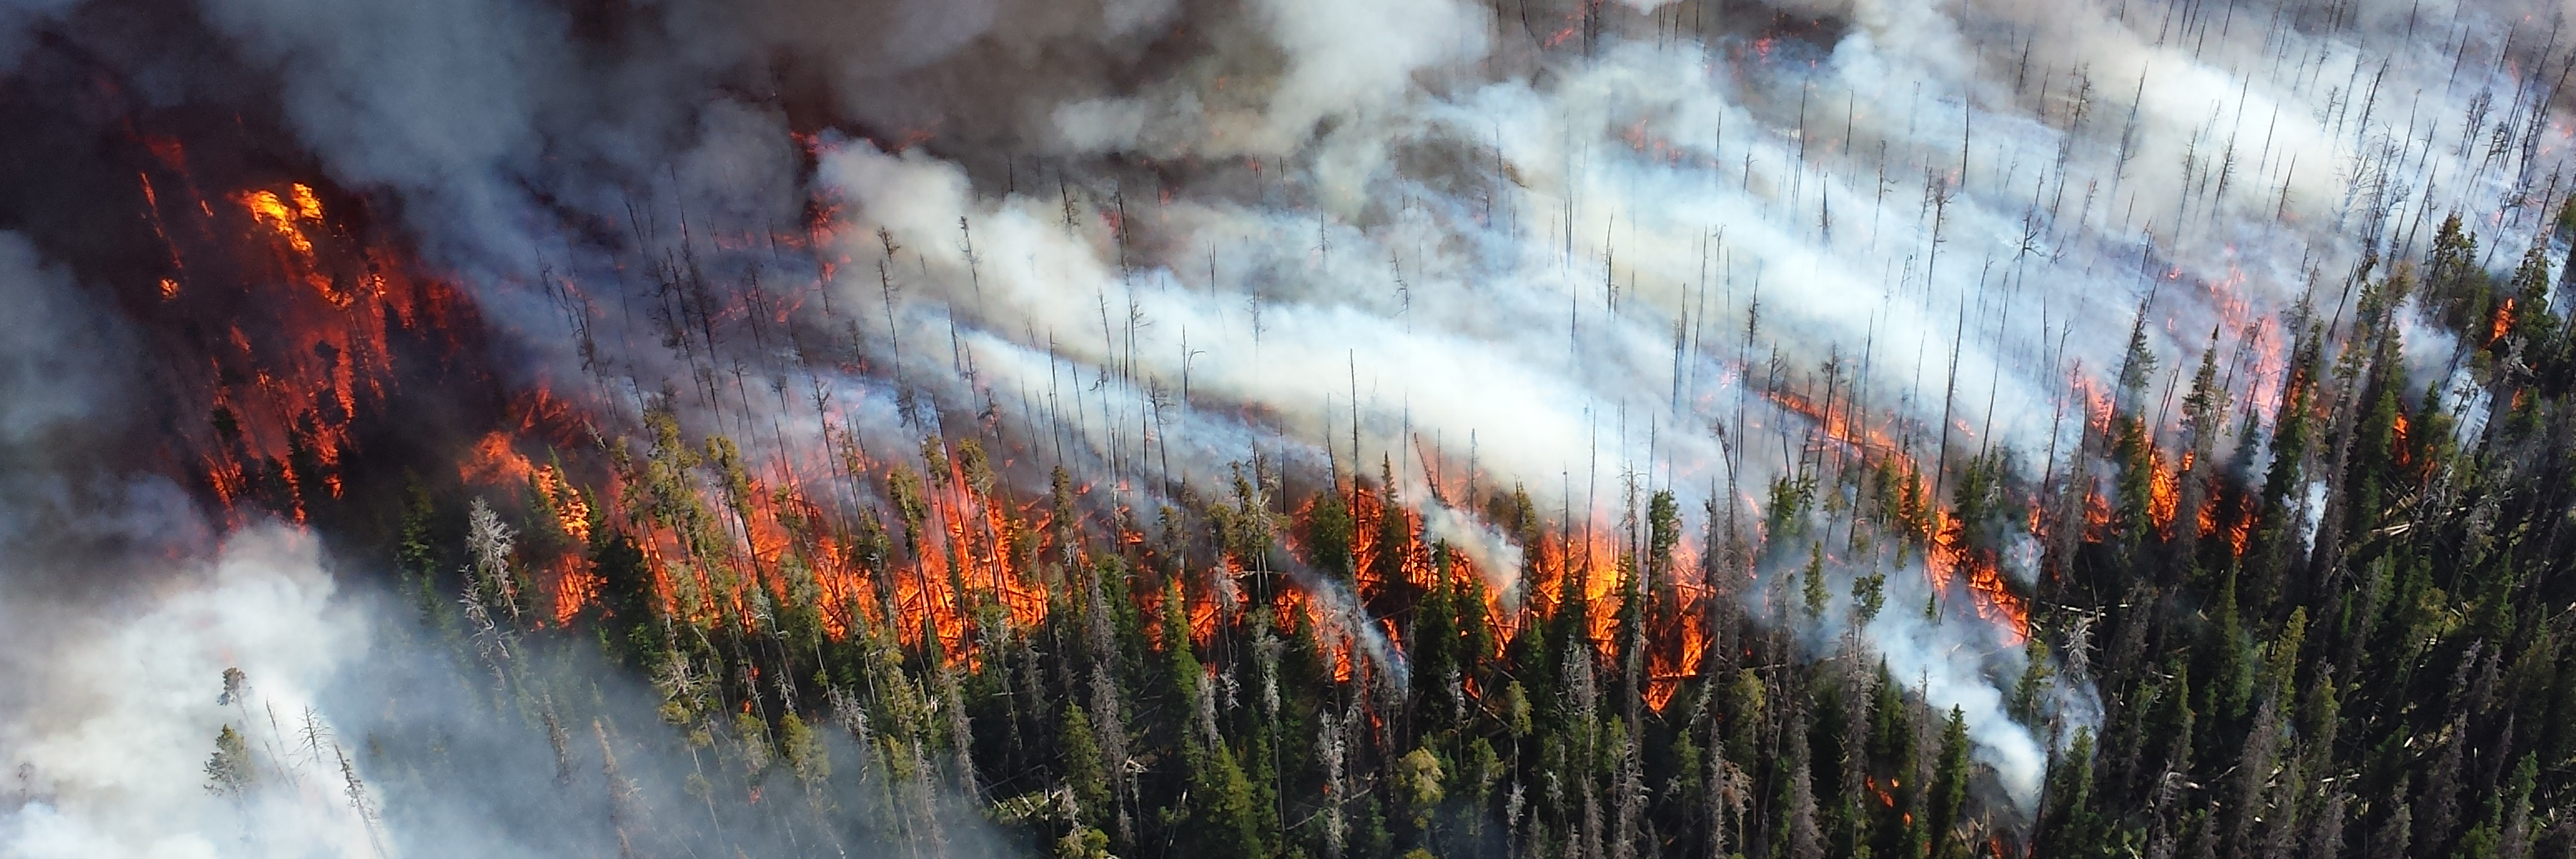 Загрязнение воздуха пожары. Йеллоустонский национальный парк пожары. Пожар на природе. Загрязнение атмосферы пожарами. Загрязнение воздуха лесными пожарами.